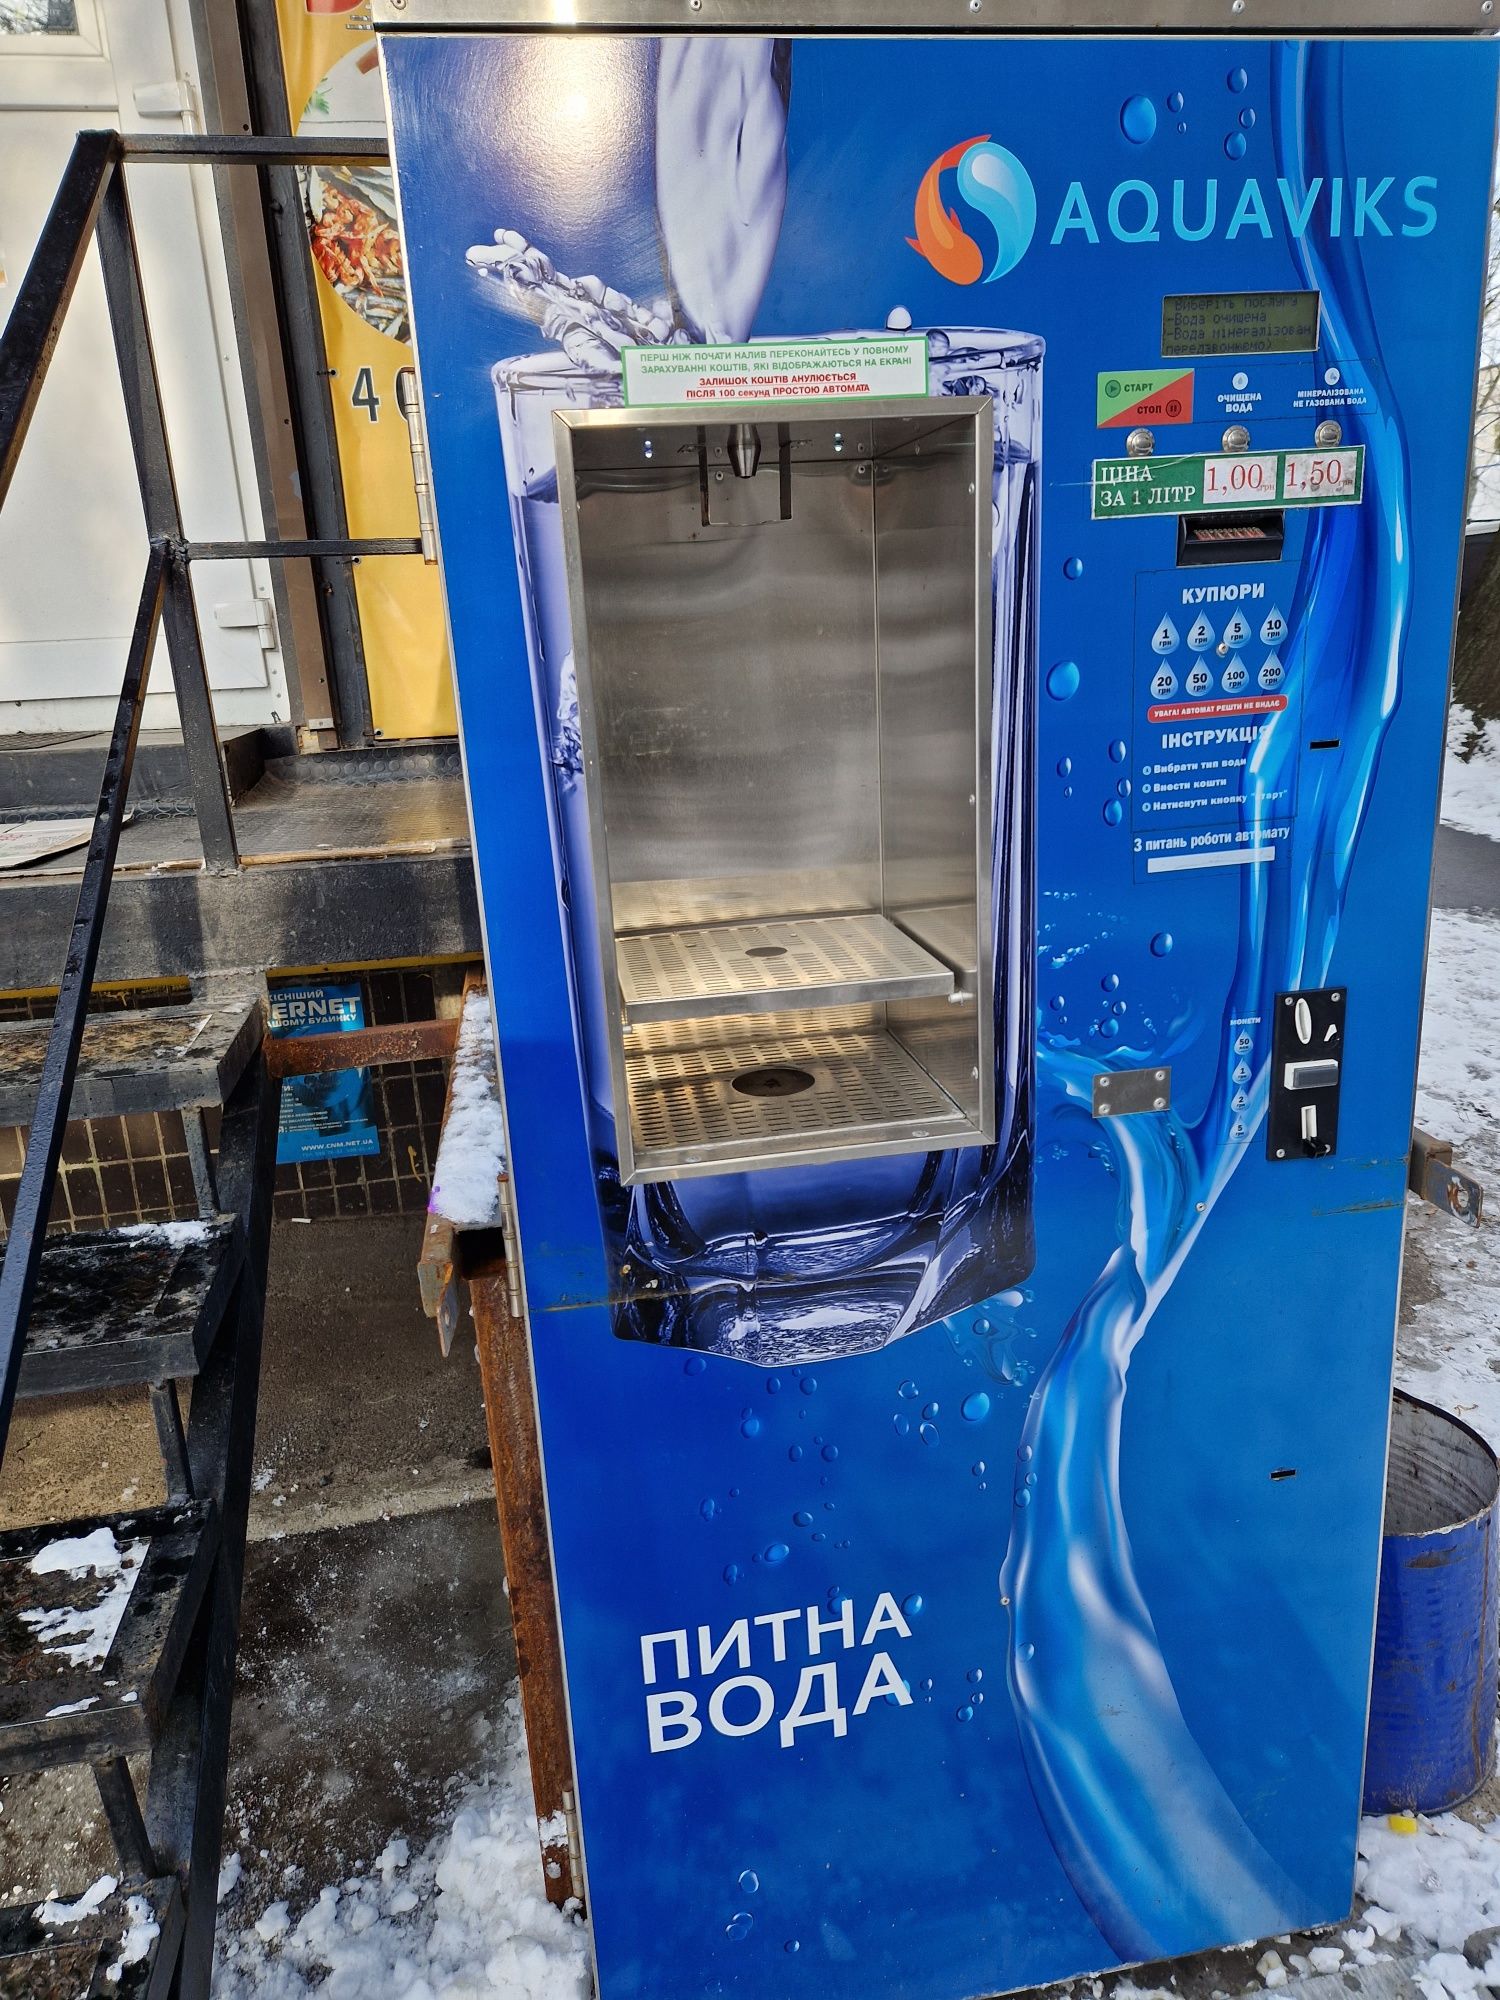 Автомат с продажу питної води